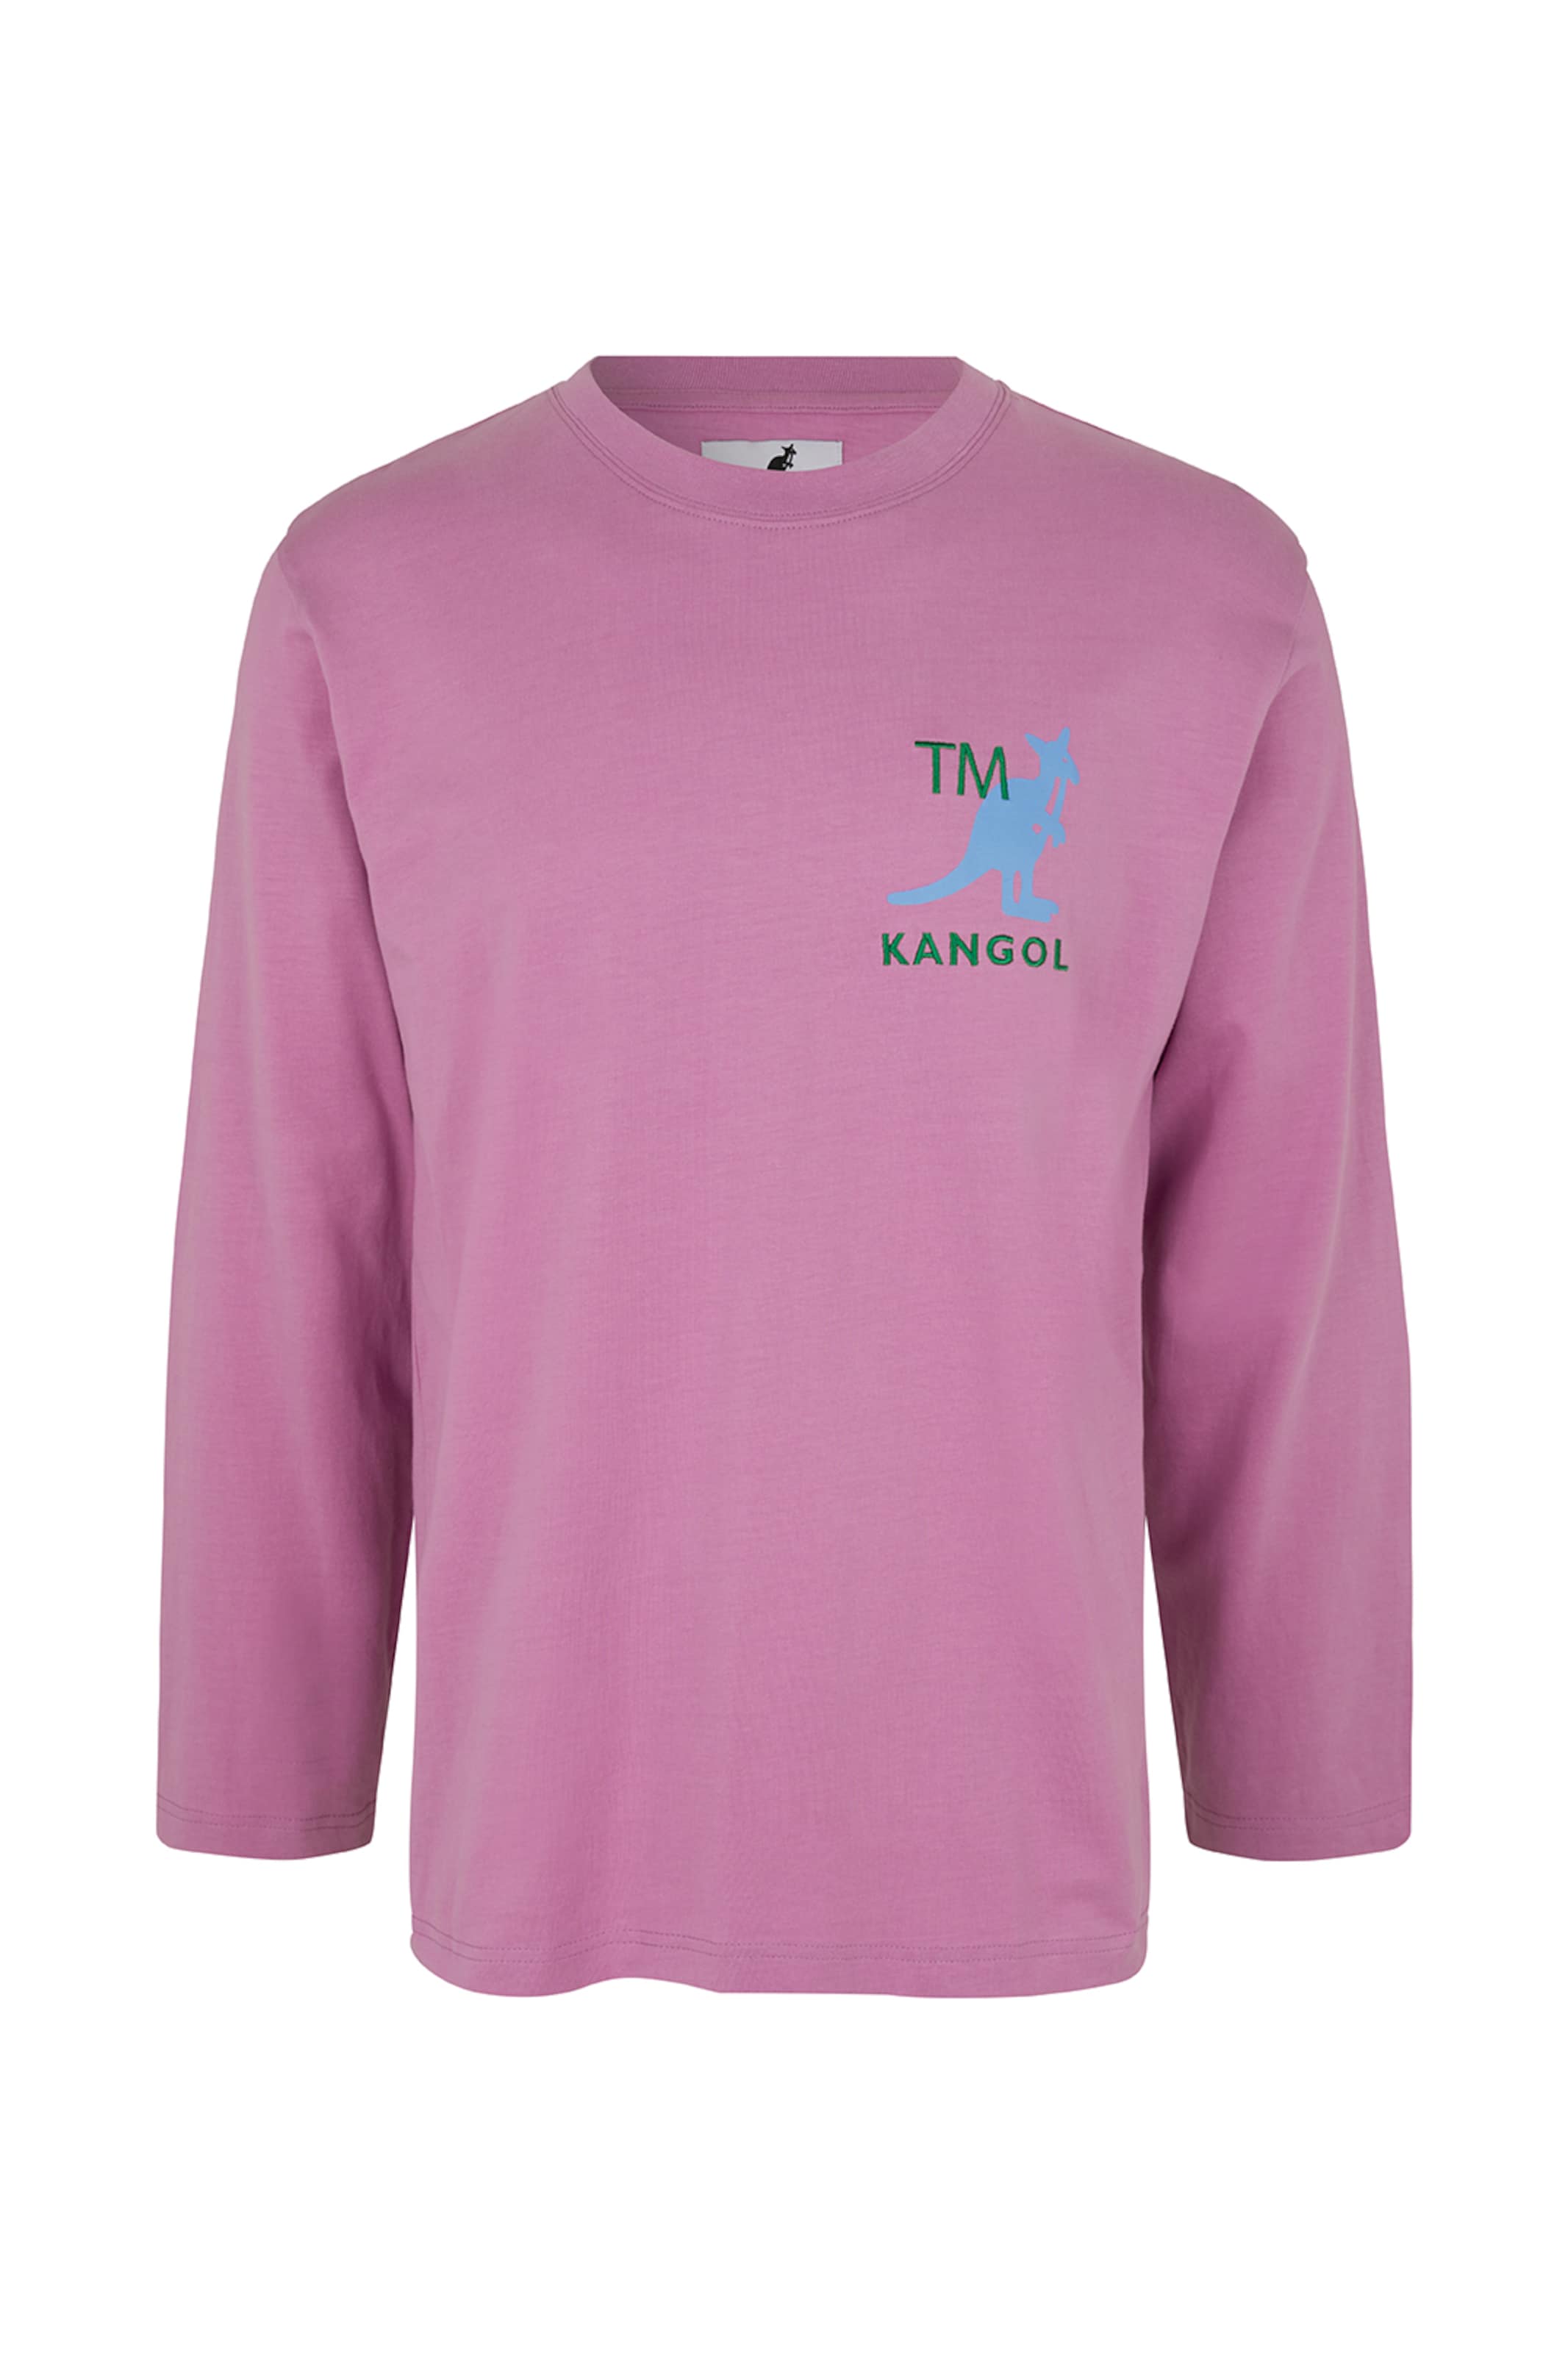 Kangol T-Shirt 'harlem' XS Violet